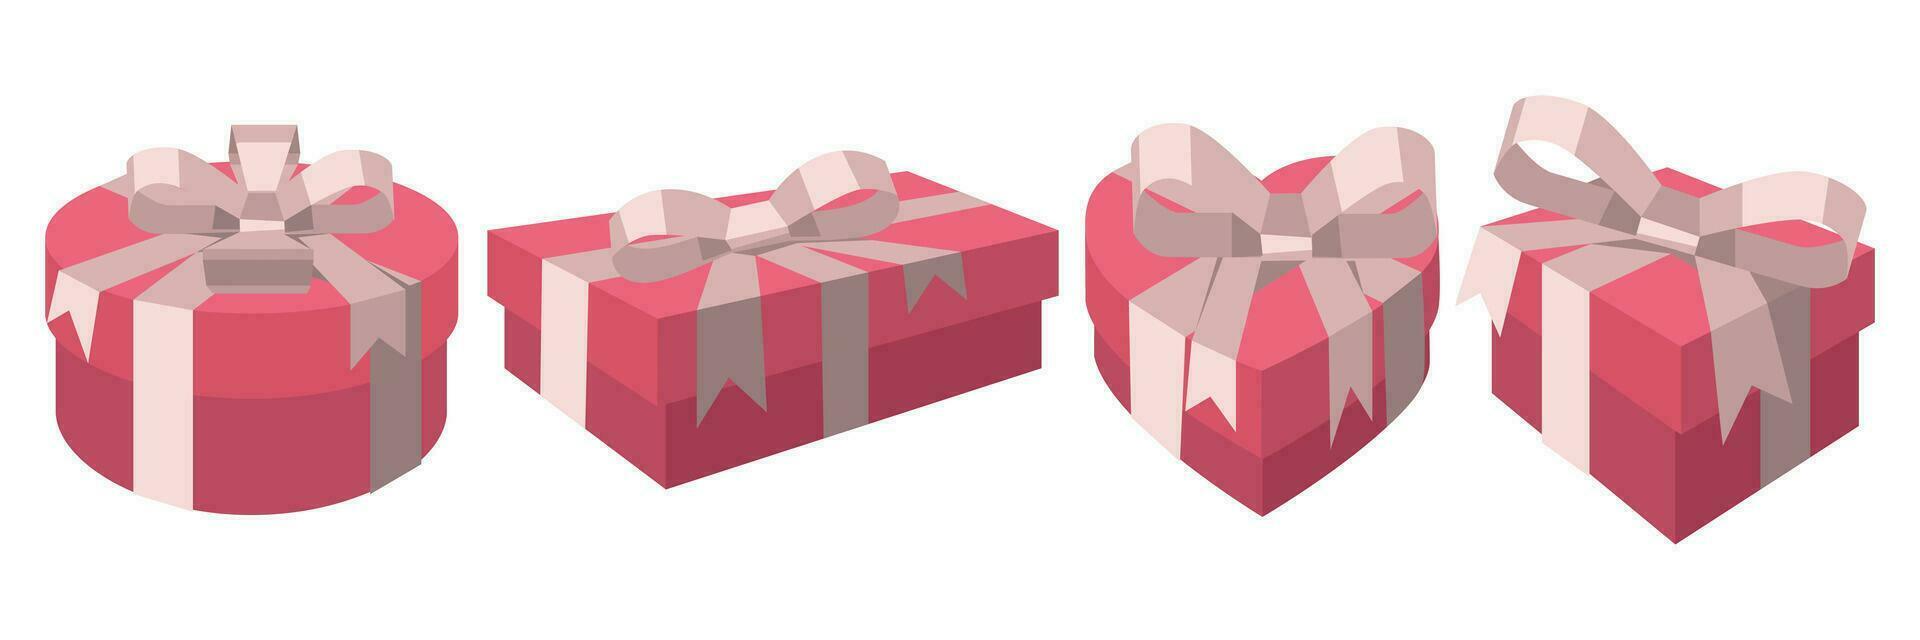 conjunto de regalo paquetes con rosado arcos y cintas realista tridimensional imagen. como un modelo para festivo decoración. vector ilustración el forma de el regalos es corazón, cuadrado, rectángulo, circulo